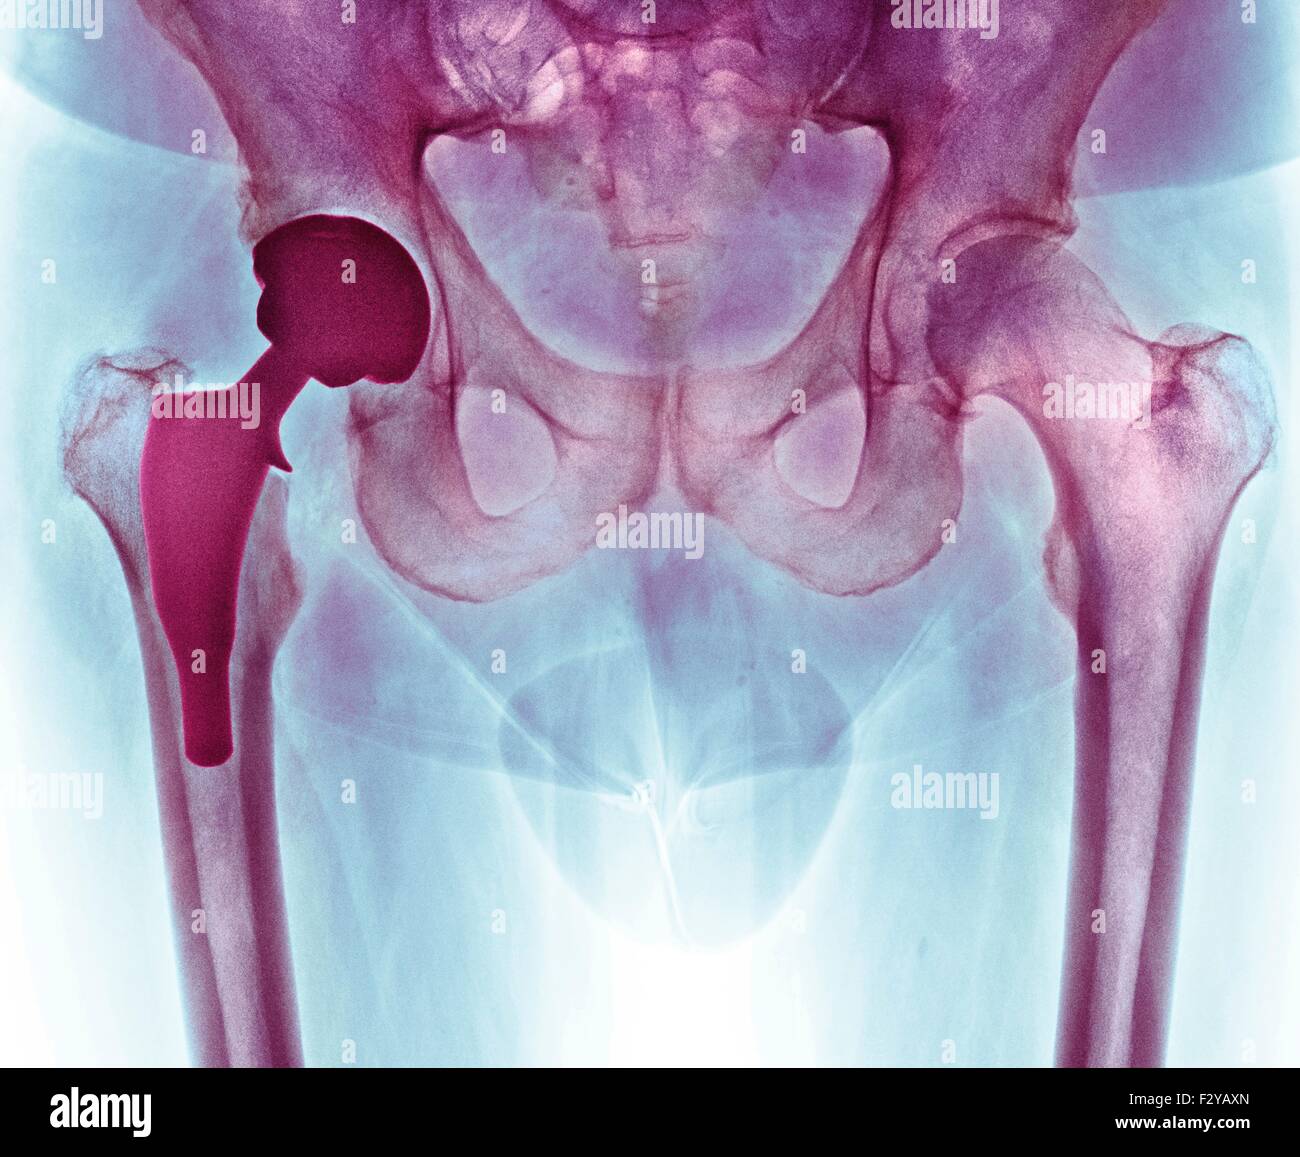 Hüftgelenkersatz. Farbig x-ray einen Schnitt durch die Becken-Region von einem 66 Jahre alten männlichen Patienten nach Hüftgelenkersatz-Operation. Hier, die prothetische Hüftgelenk (dunkel, links) kann gesehen werden, mit der Peg implantiert in den Femur (Mitte-links) und Ersatz-Buchse in der Hüfte (oben links). Stockfoto